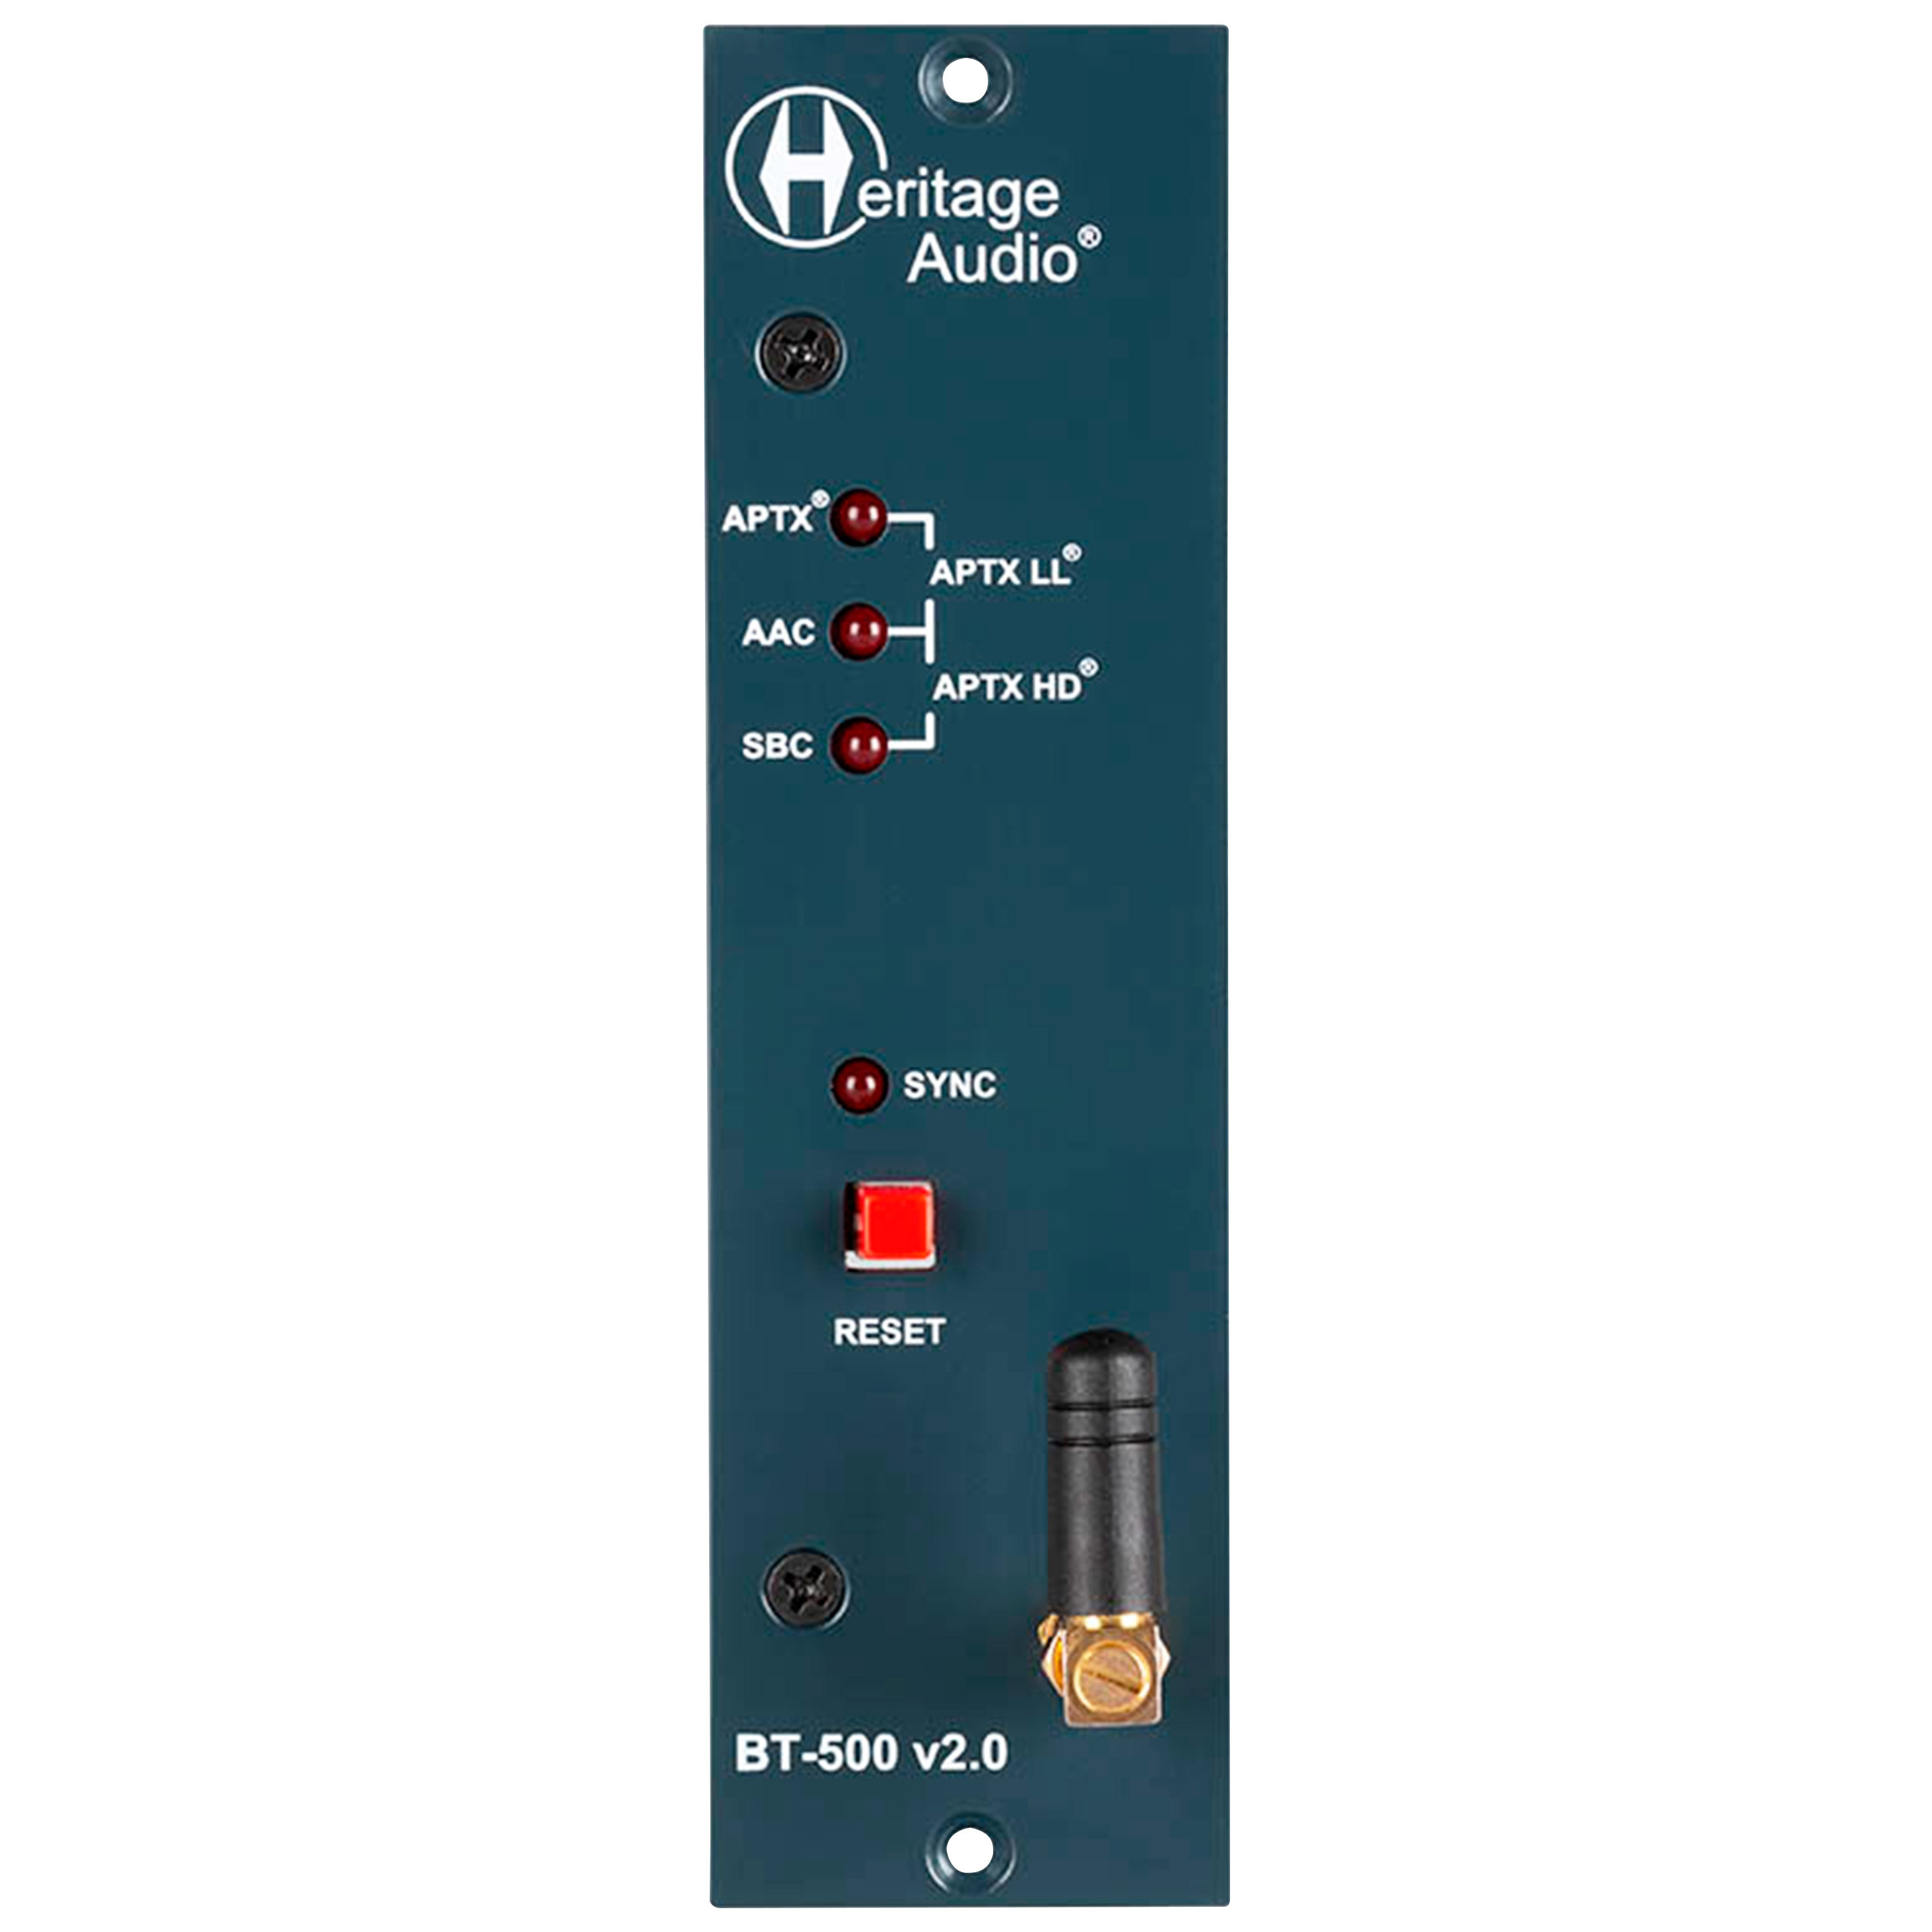 Heritage Audio BT-500 v2.0 500 Series